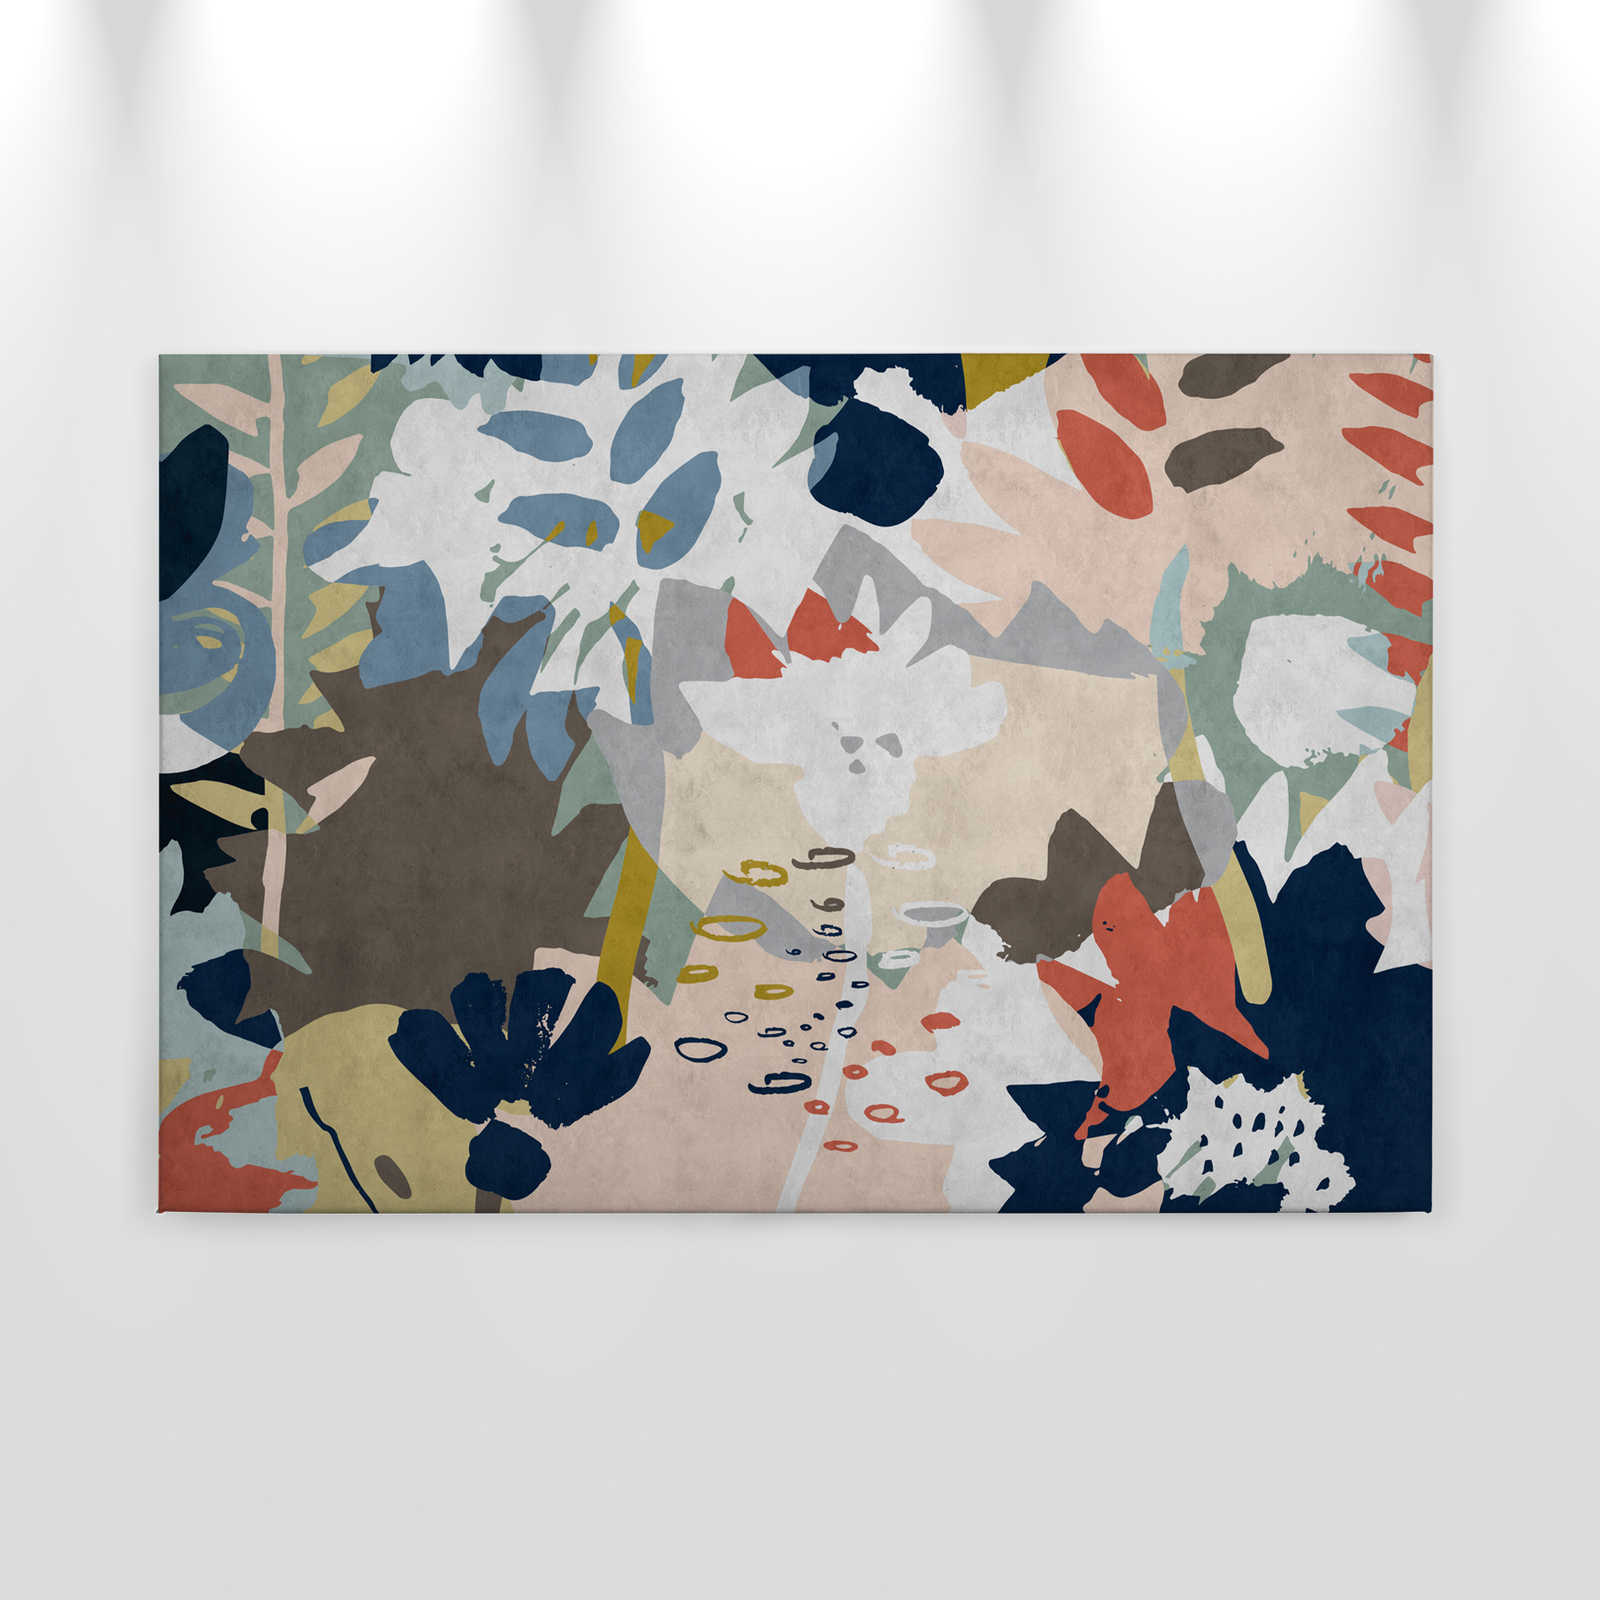             Floral Collage 4 - Toiles avec motifs de feuilles colorées - structure buvard - 0,90 m x 0,60 m
        